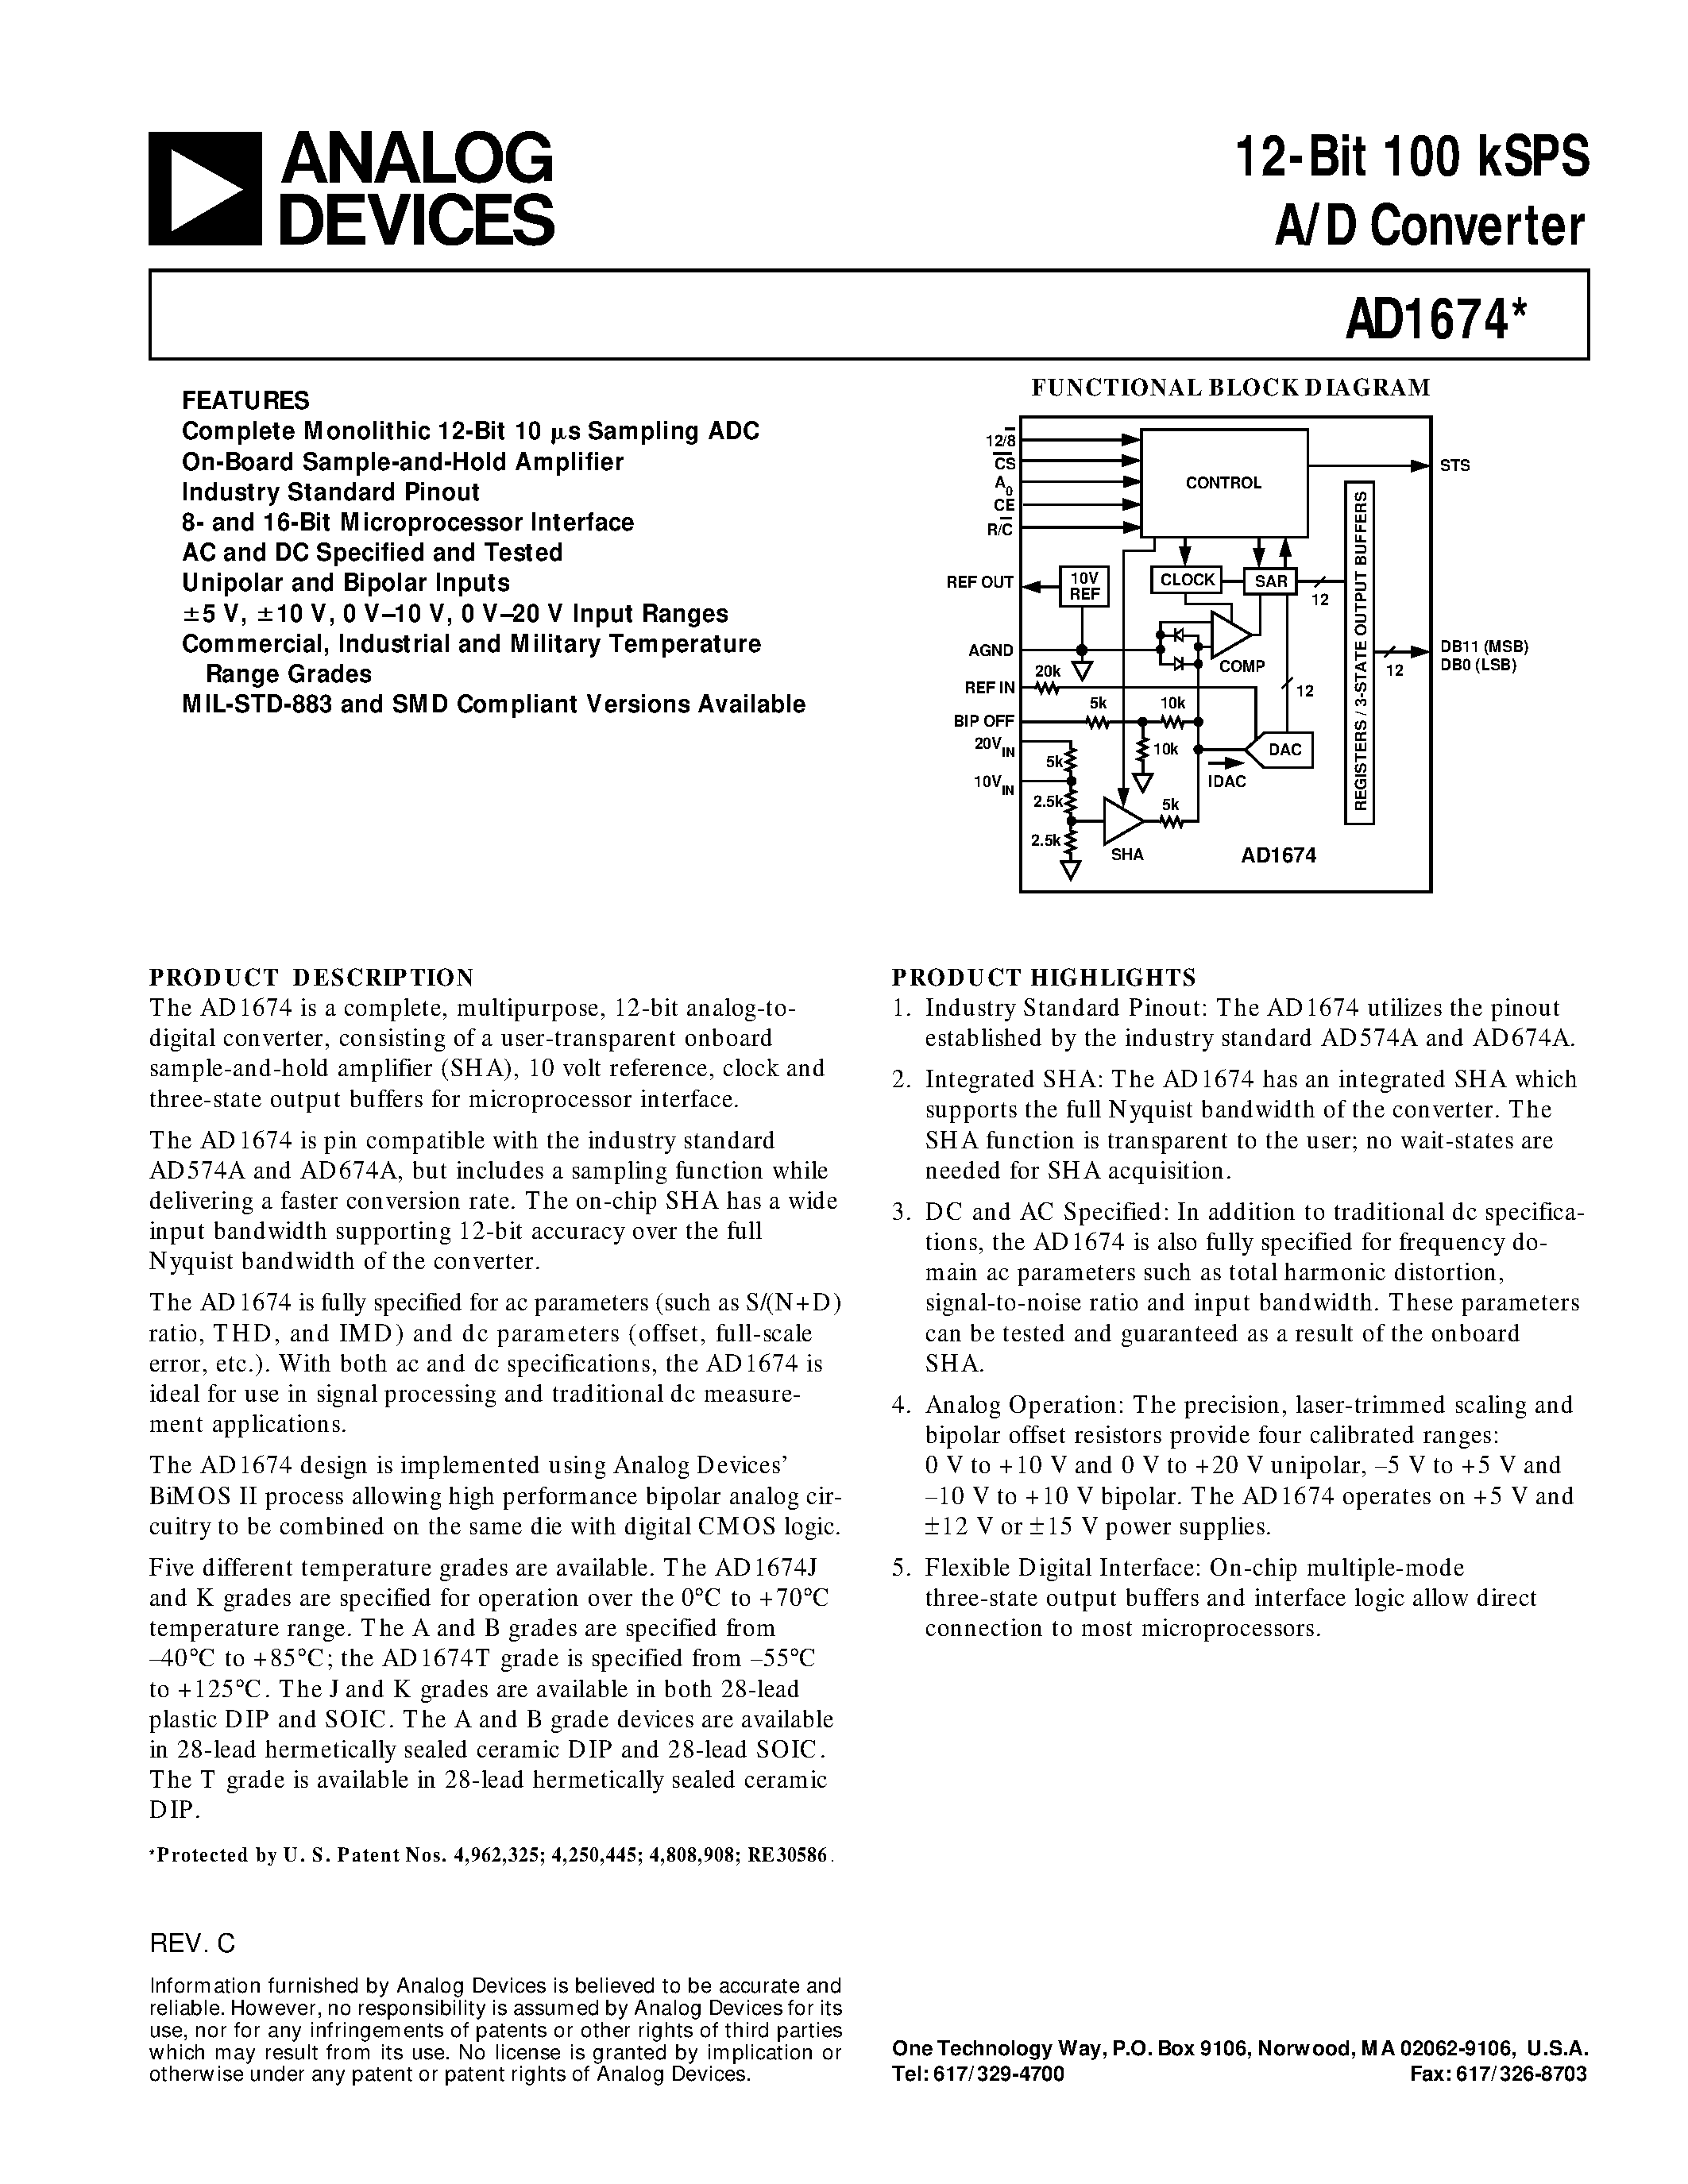 Datasheet AD1674KR - 12-Bit 100 kSPS A/D Converter page 1